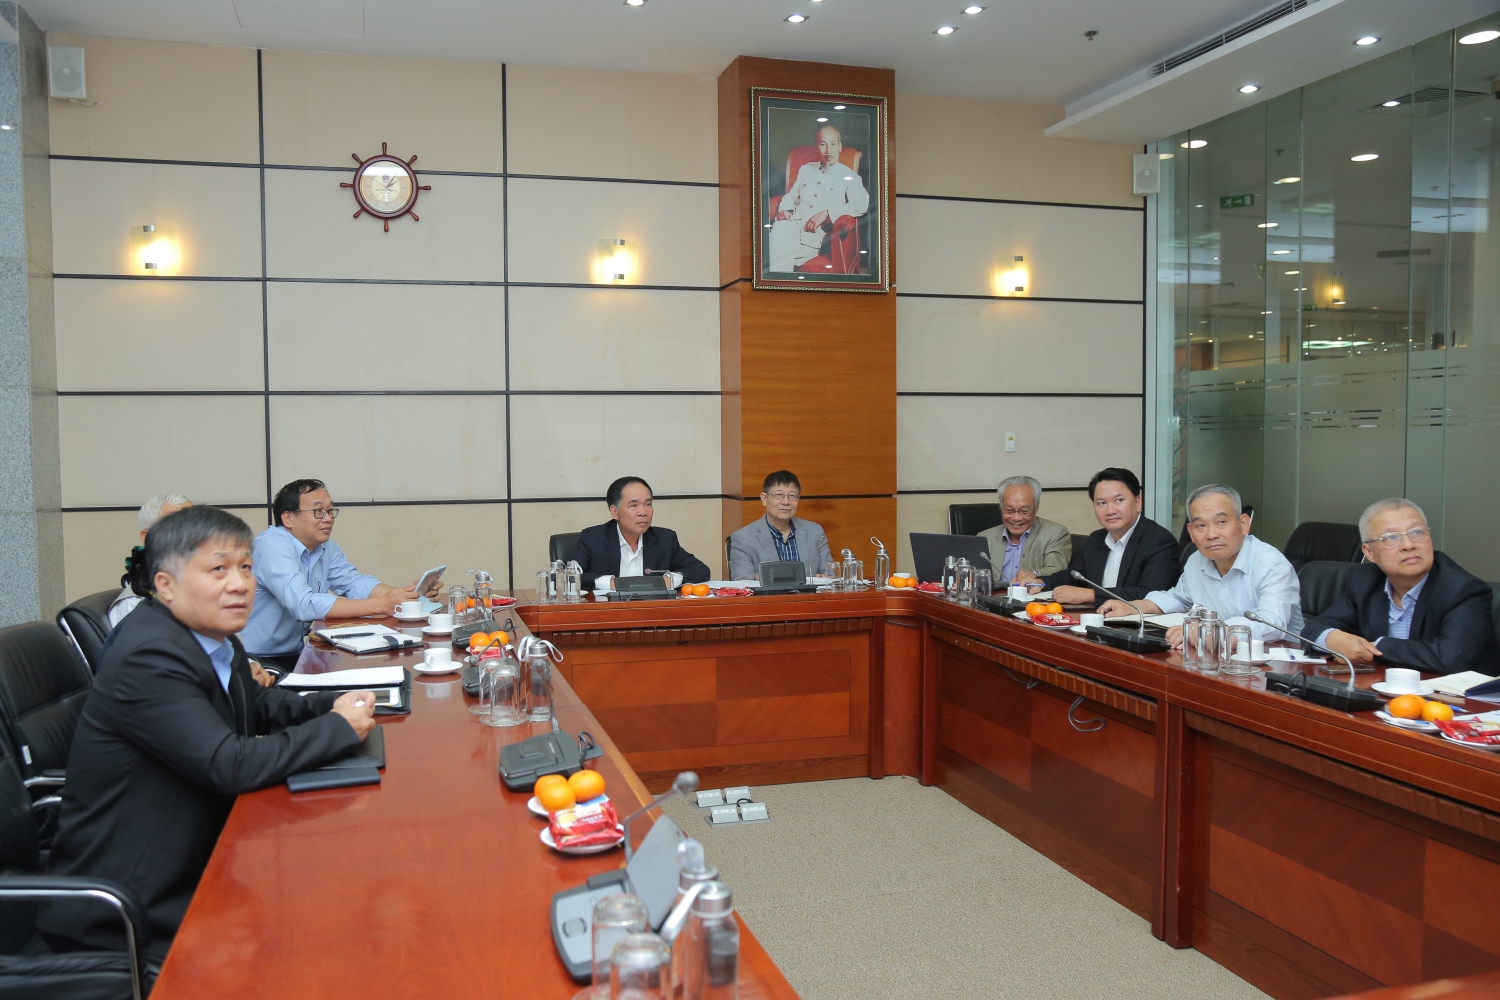 Hội Dầu khí Việt Nam đóng góp ý kiến sửa đổi Nghị định 124 về đầu tư ra nước ngoài trong hoạt động dầu khí”